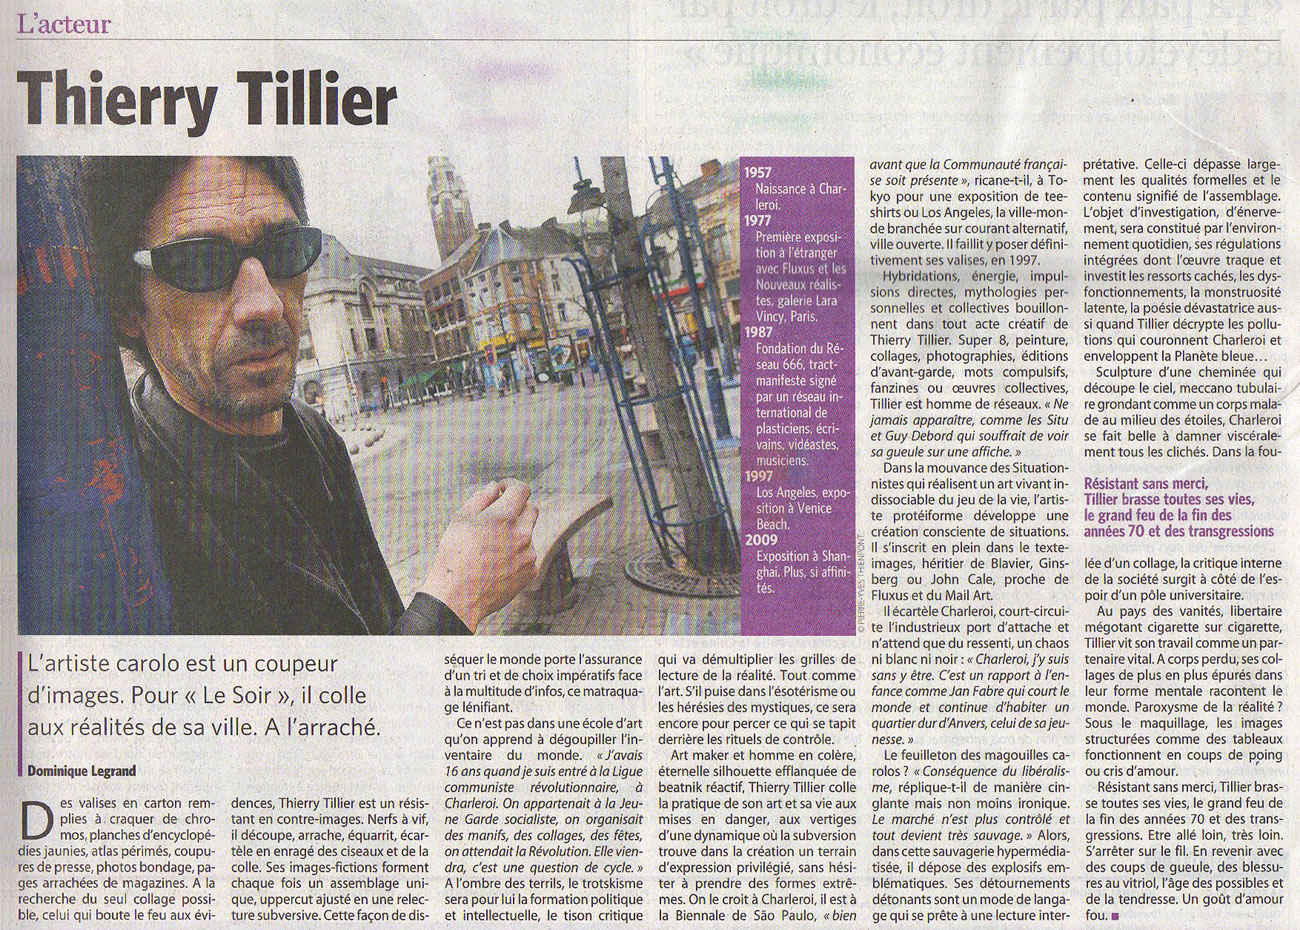 Thierry Tillier – Le Soir – 12 March 2008